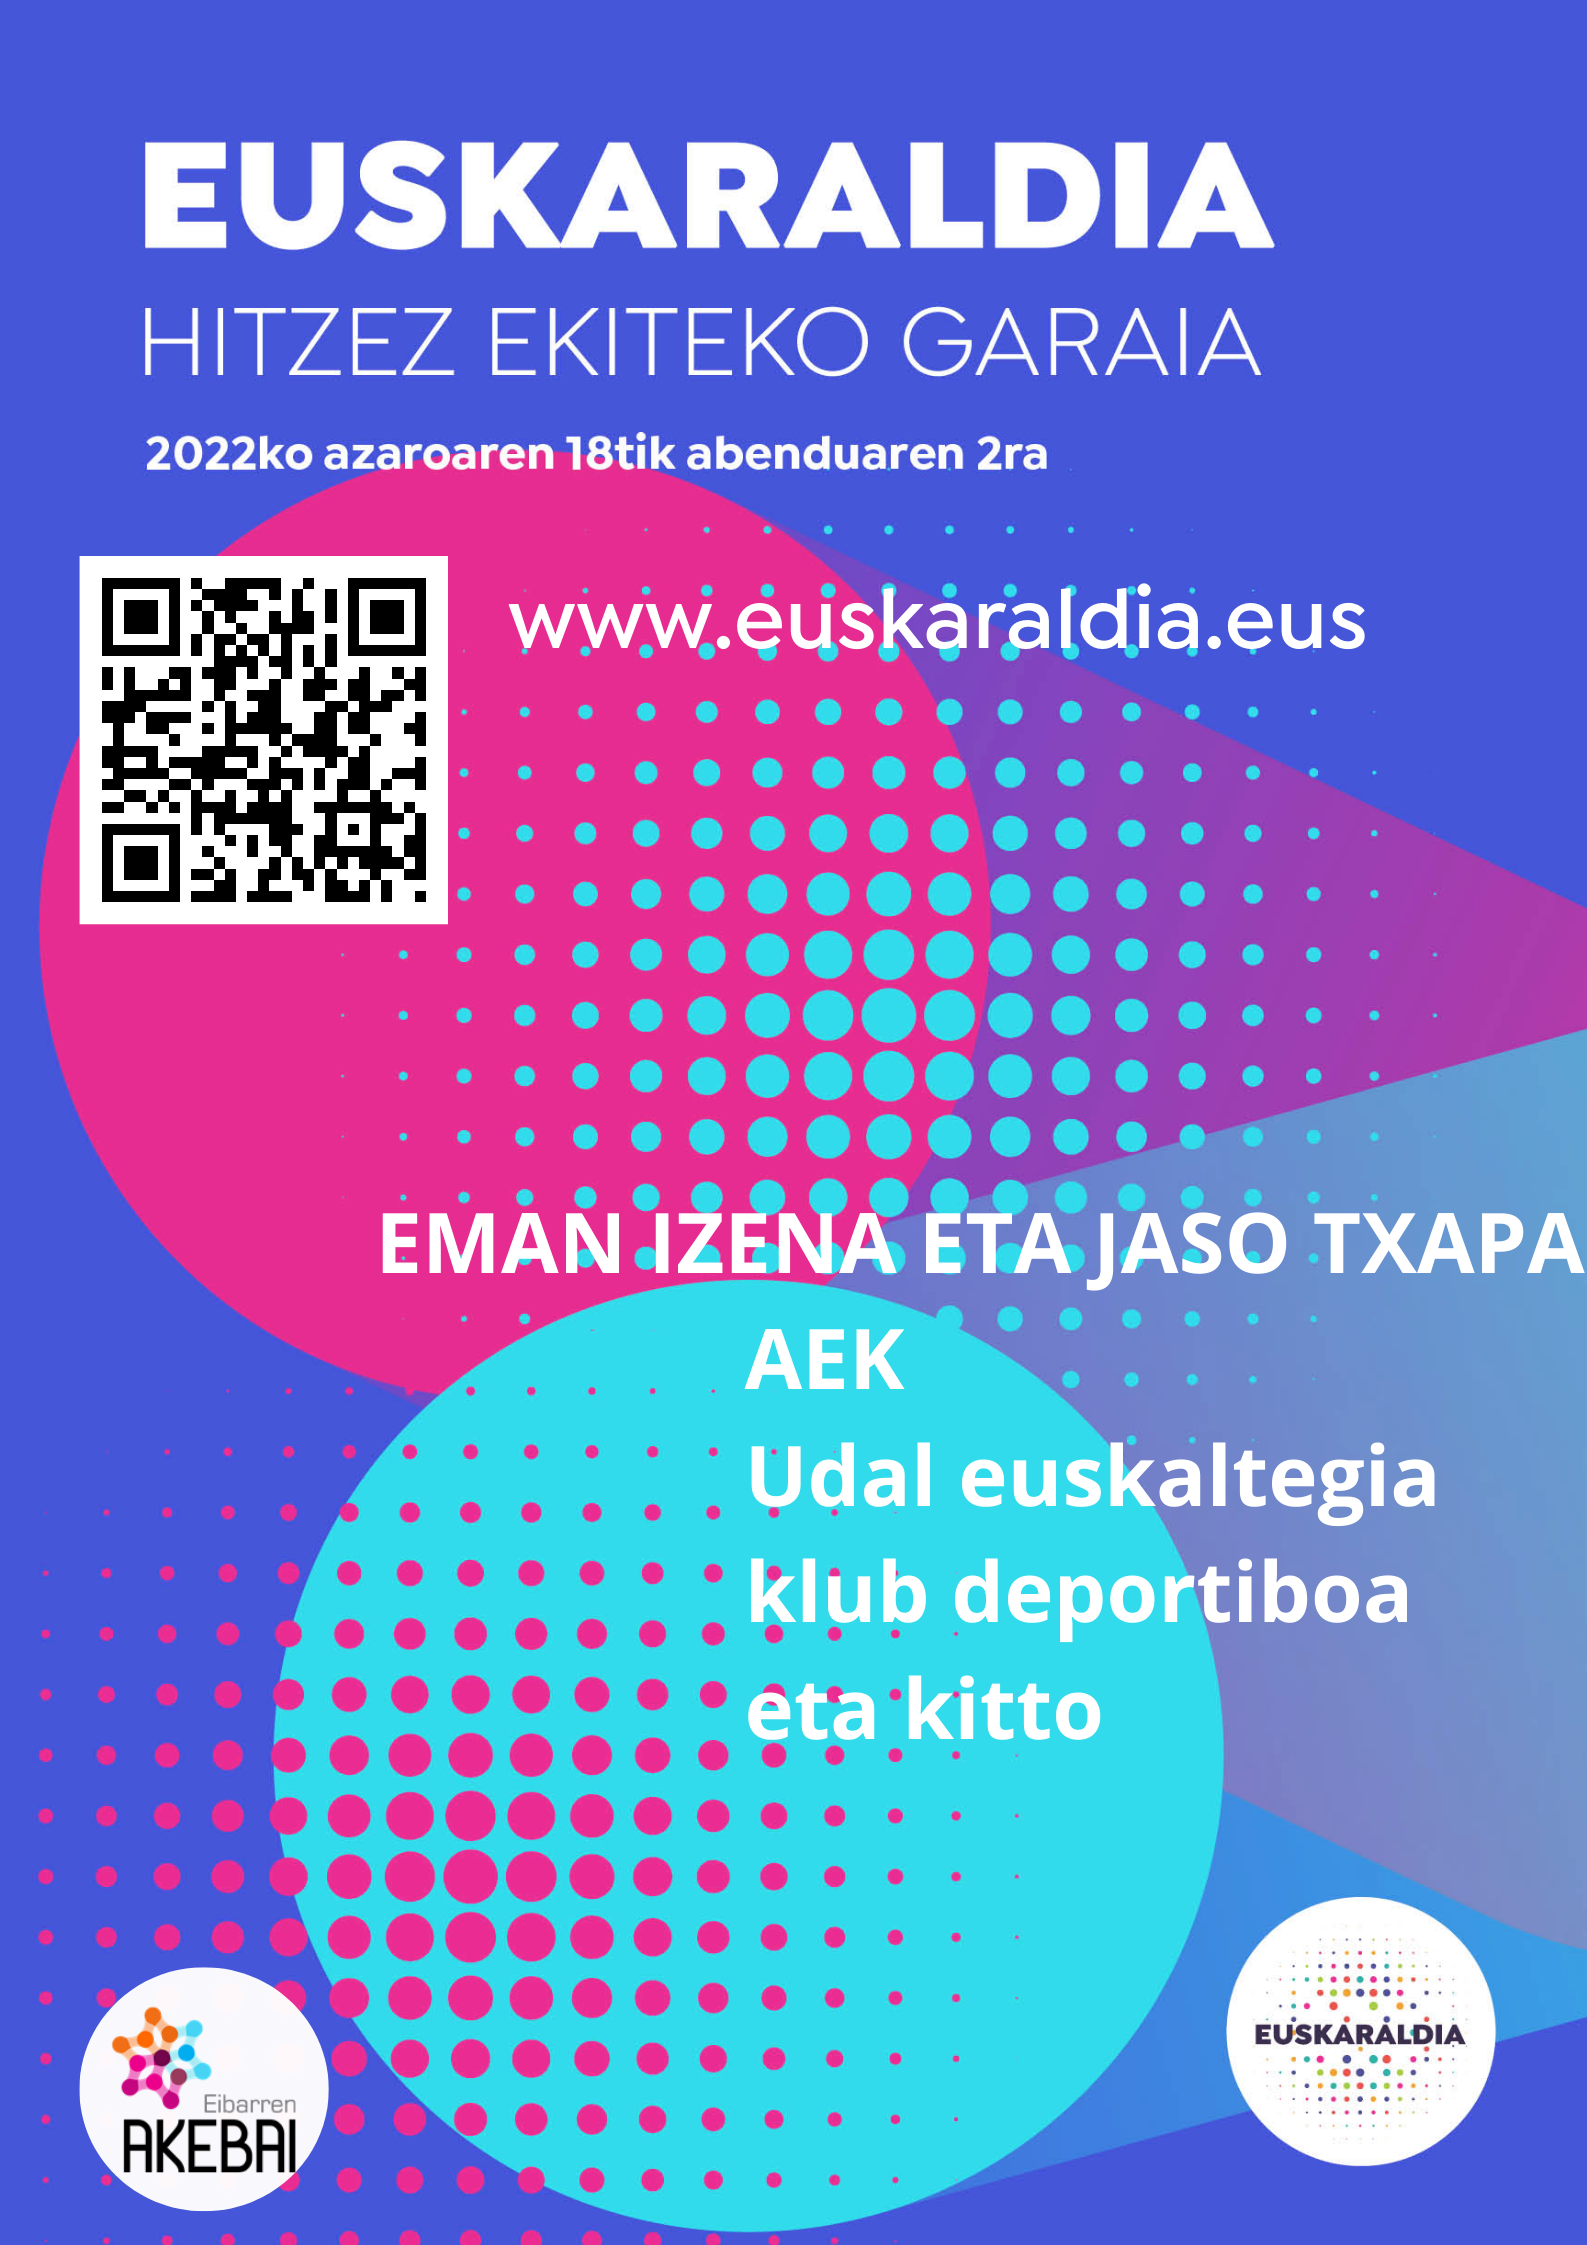 Ya está abierto el plazo de inscripción para participar en el Euskaraldia